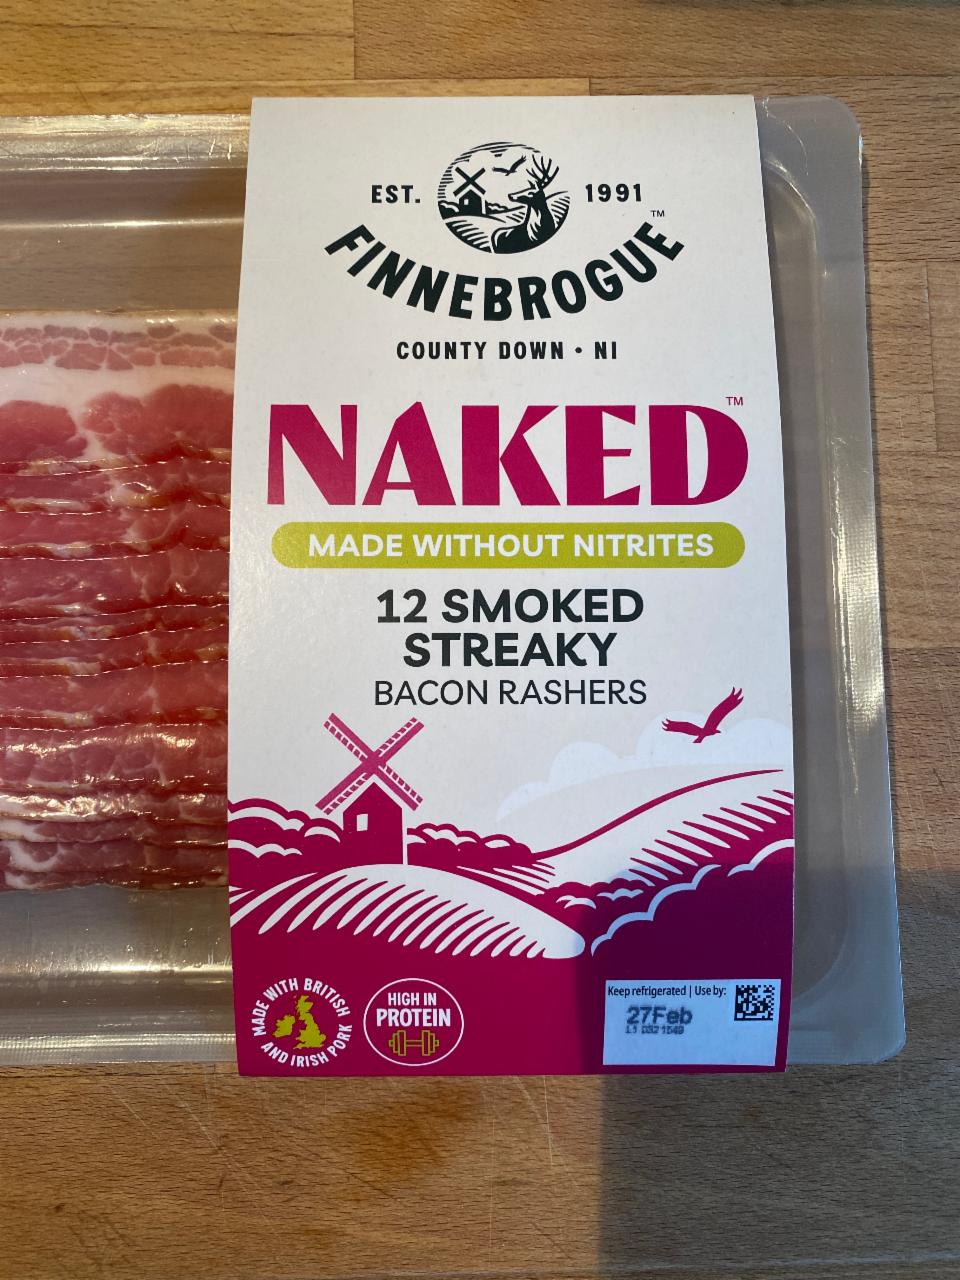 Fotografie - Finnebrogue Smoked Streaky Bacon Rashers Naked